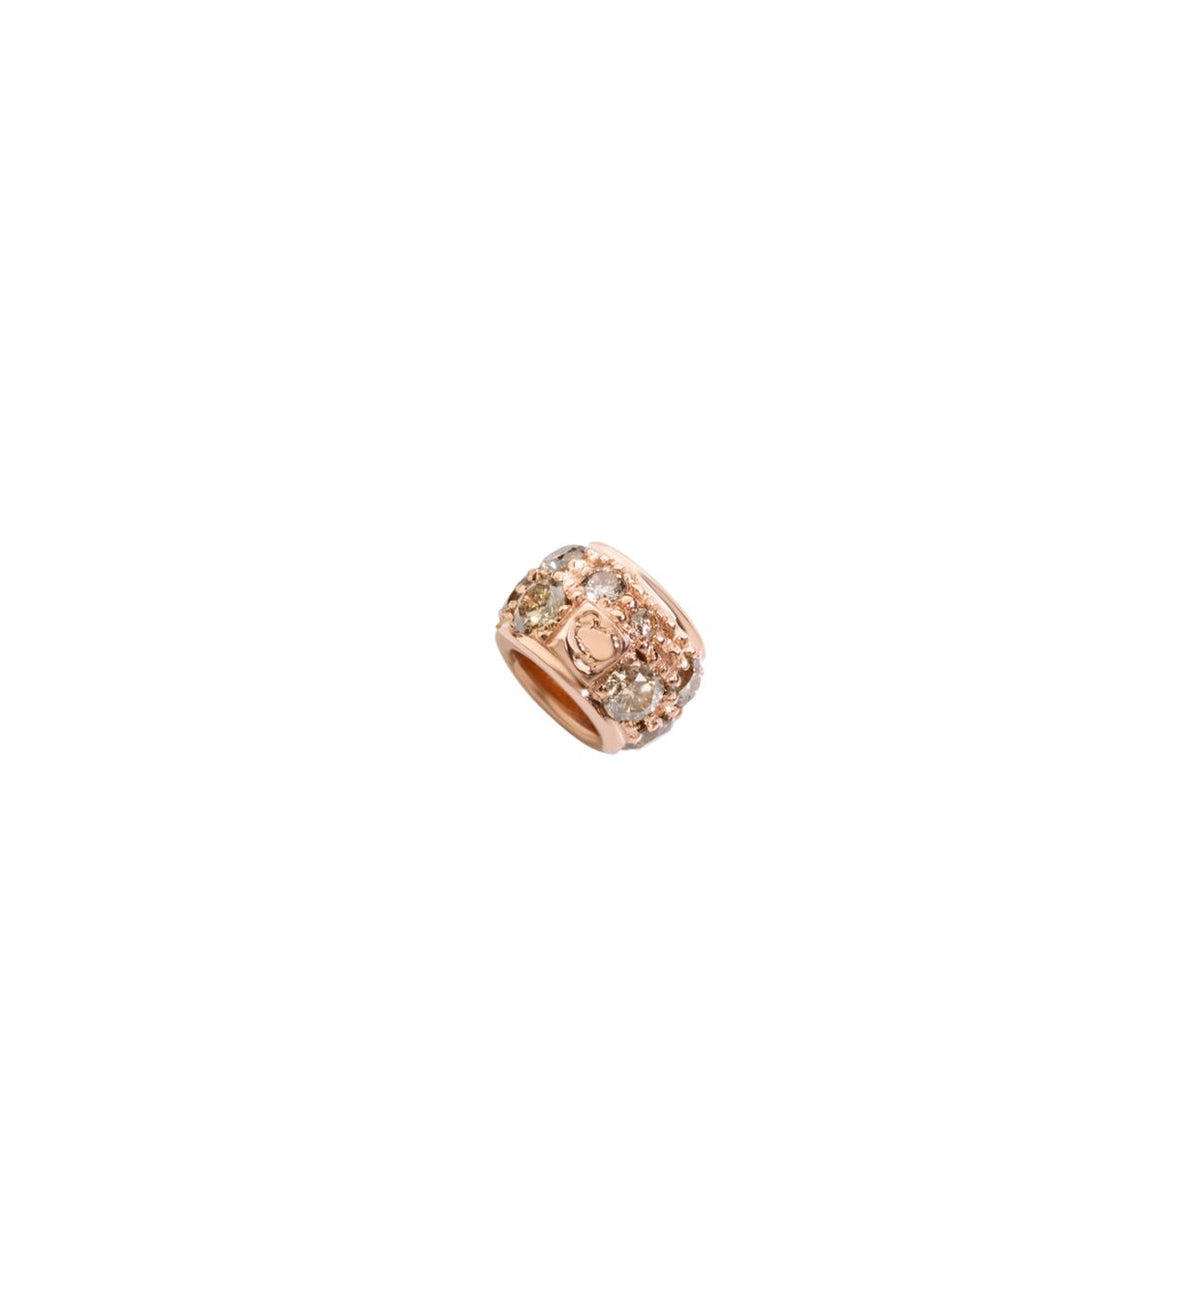 DoDo Rondelle Ringlet in 9k Rose Gold with Brown Diamonds - Orsini Jewellers NZ